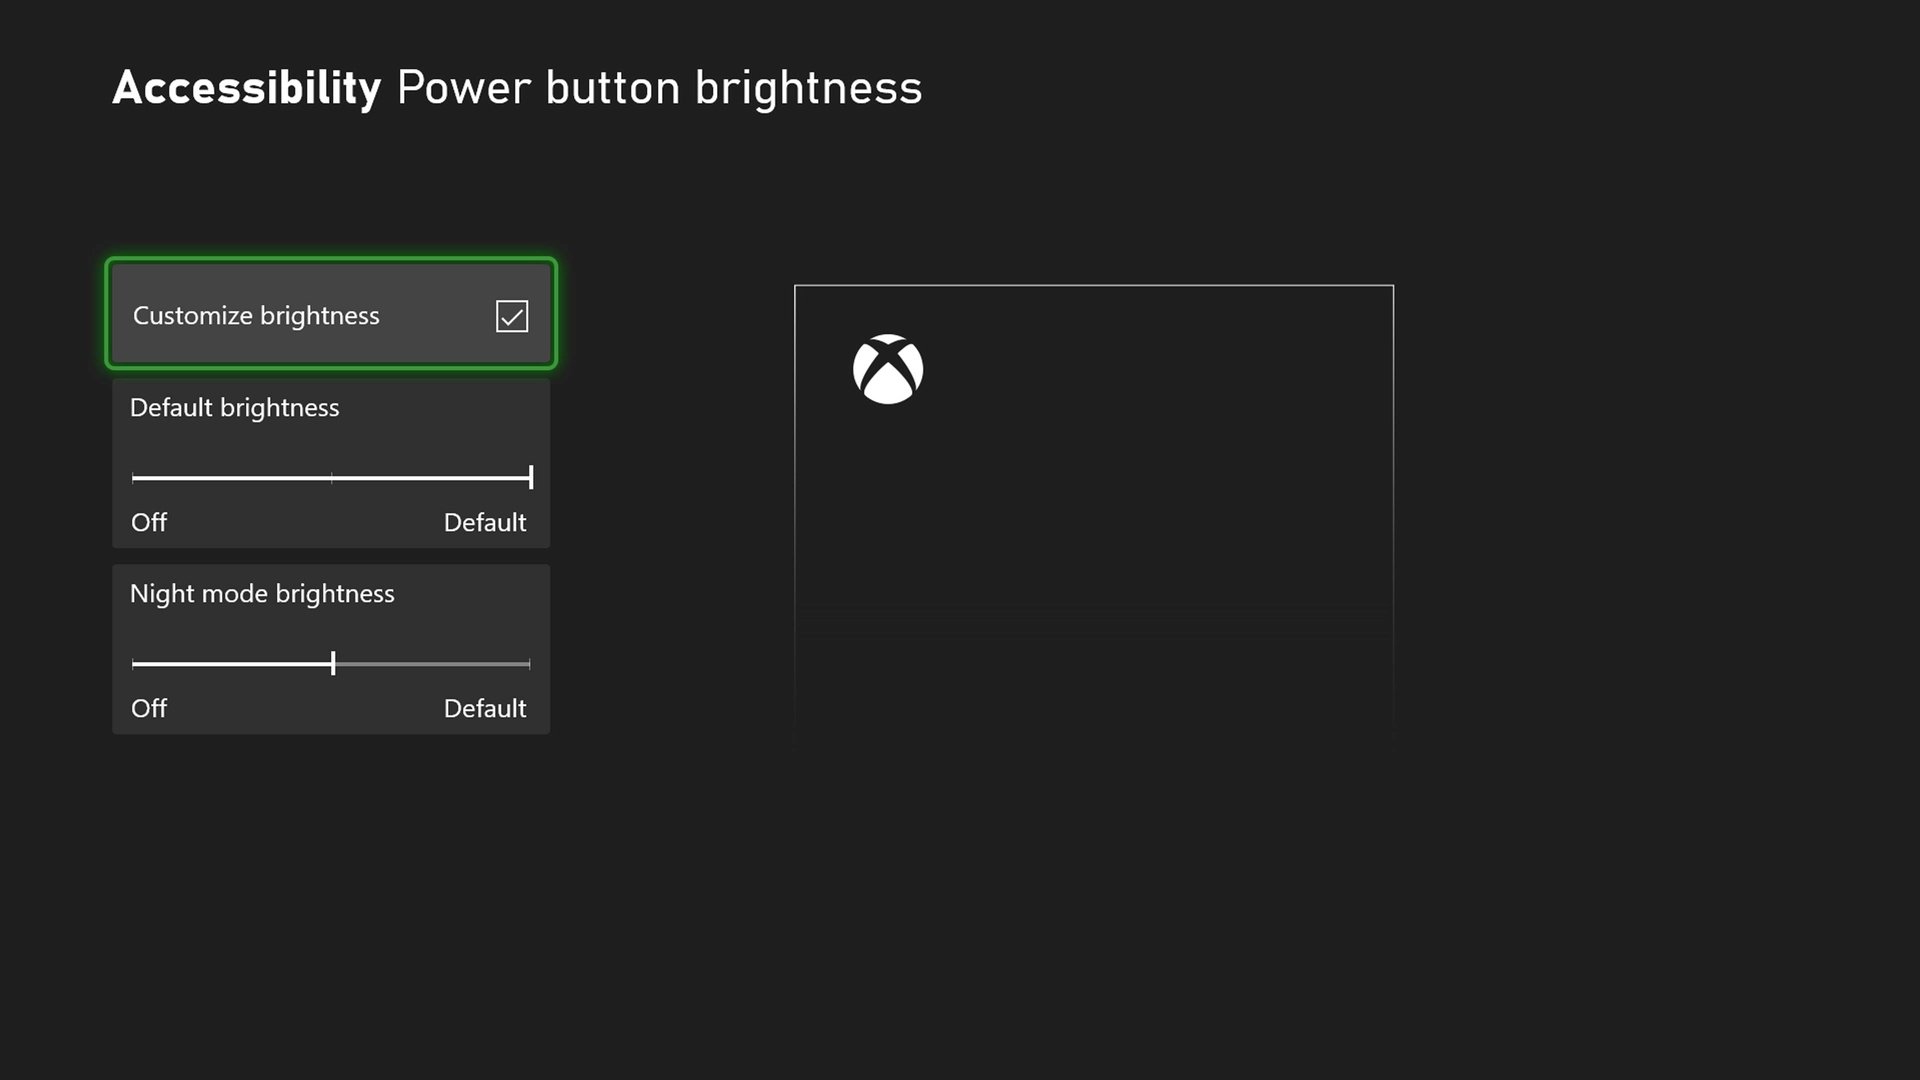 Uma das novas opções de modo noturno permite personalizar a iluminação dos botões power no console e no controle